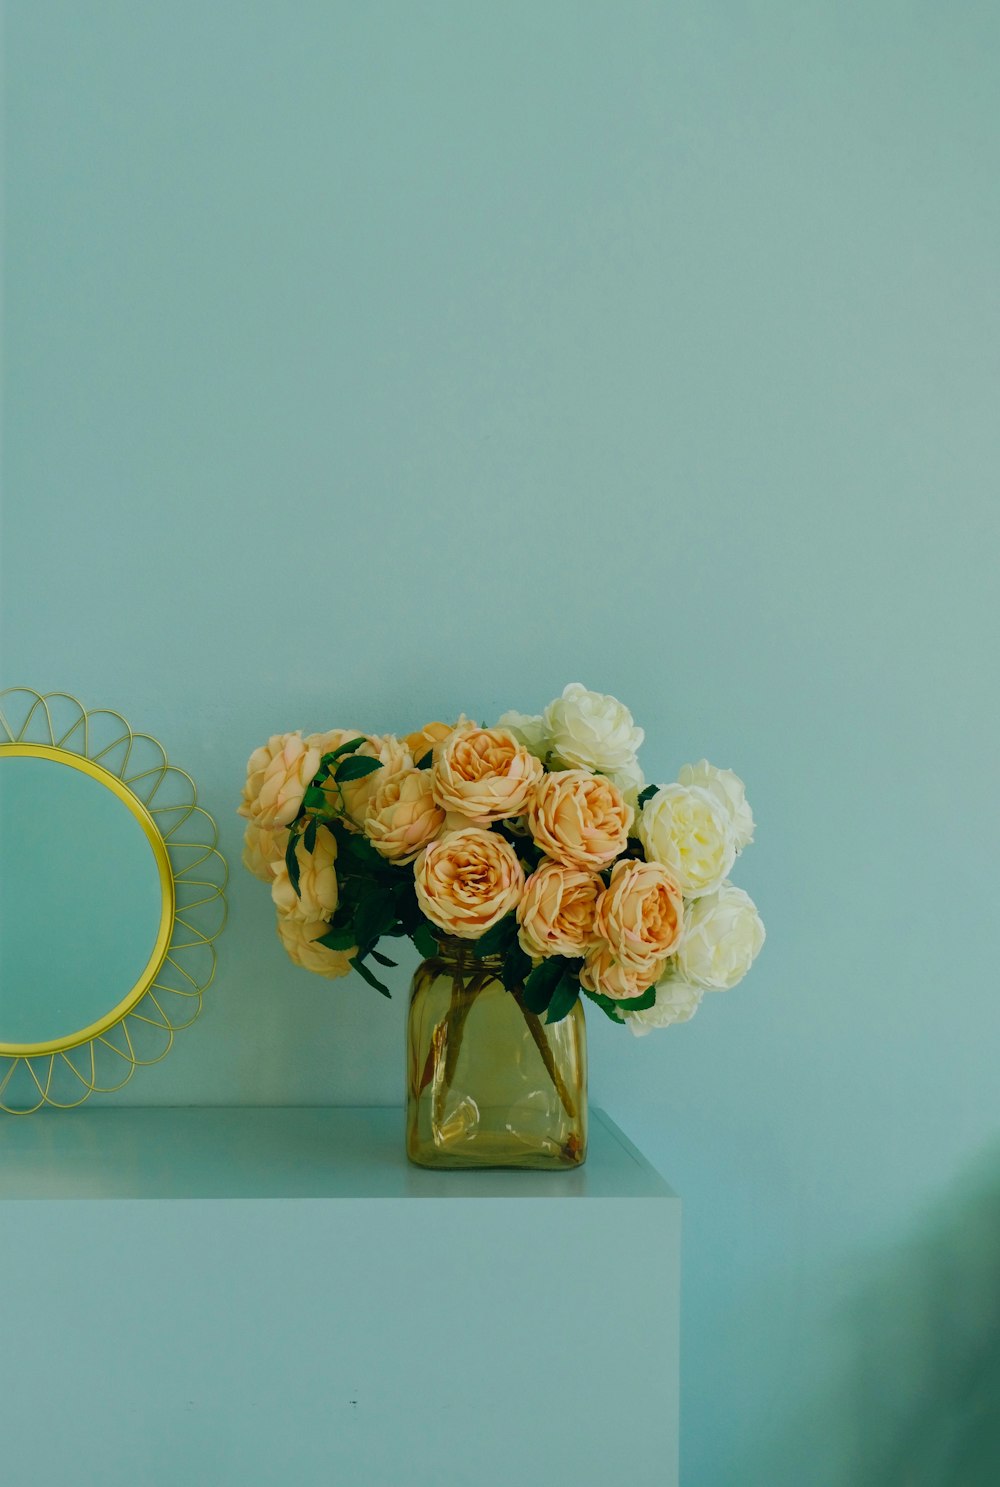 Un jarrón lleno de flores junto a un espejo